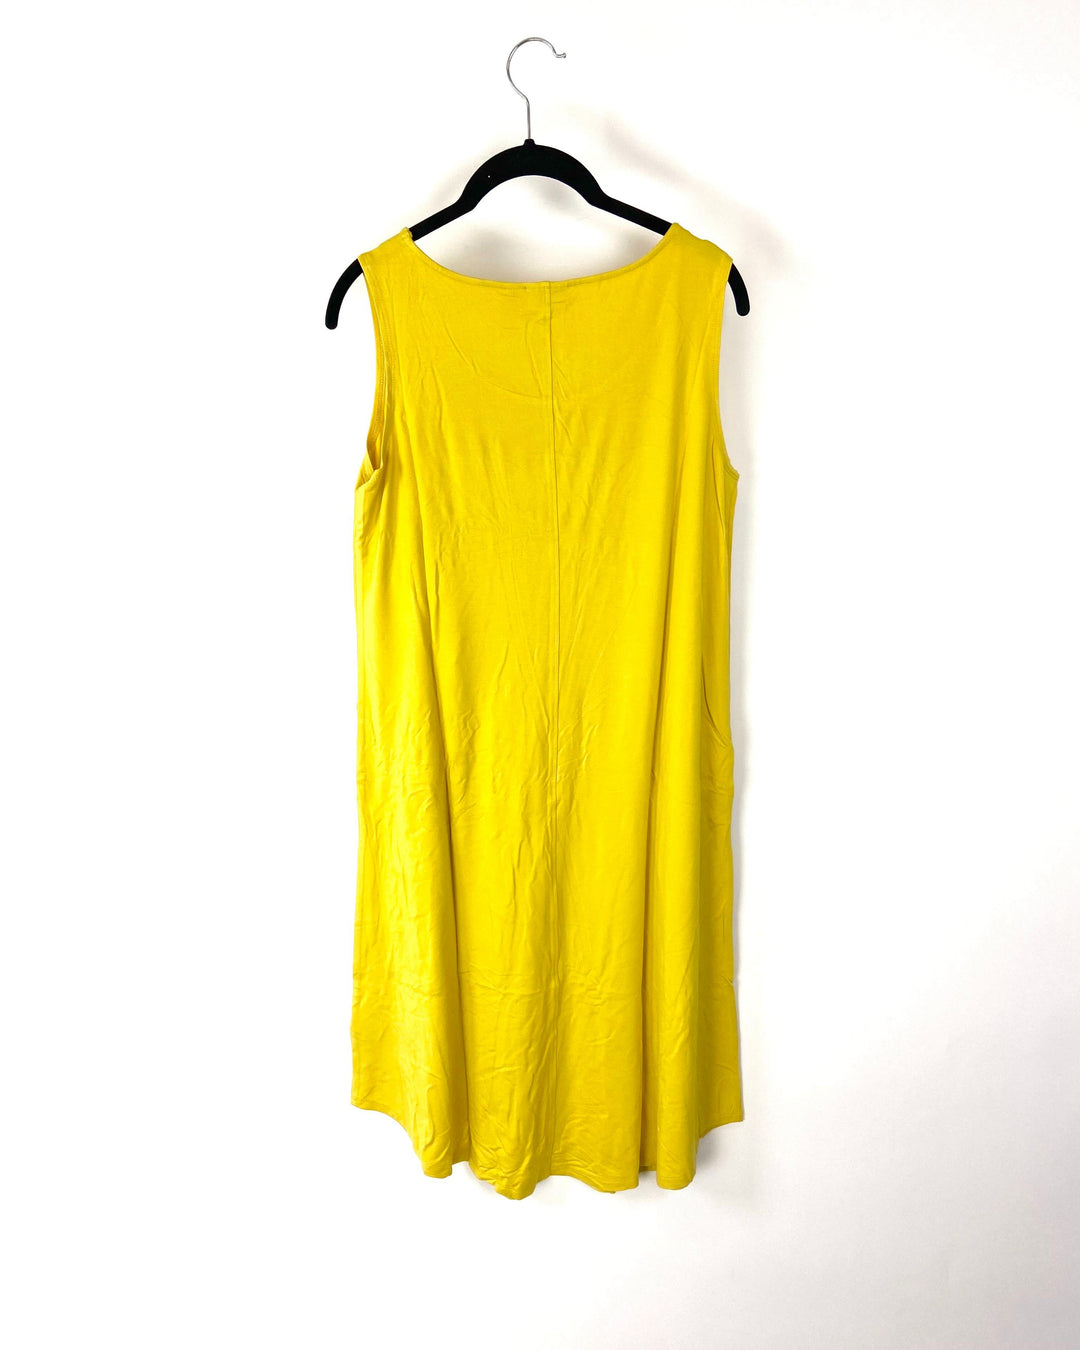 Yellow Sundress - Small, Small Petite, 1X, 1XP